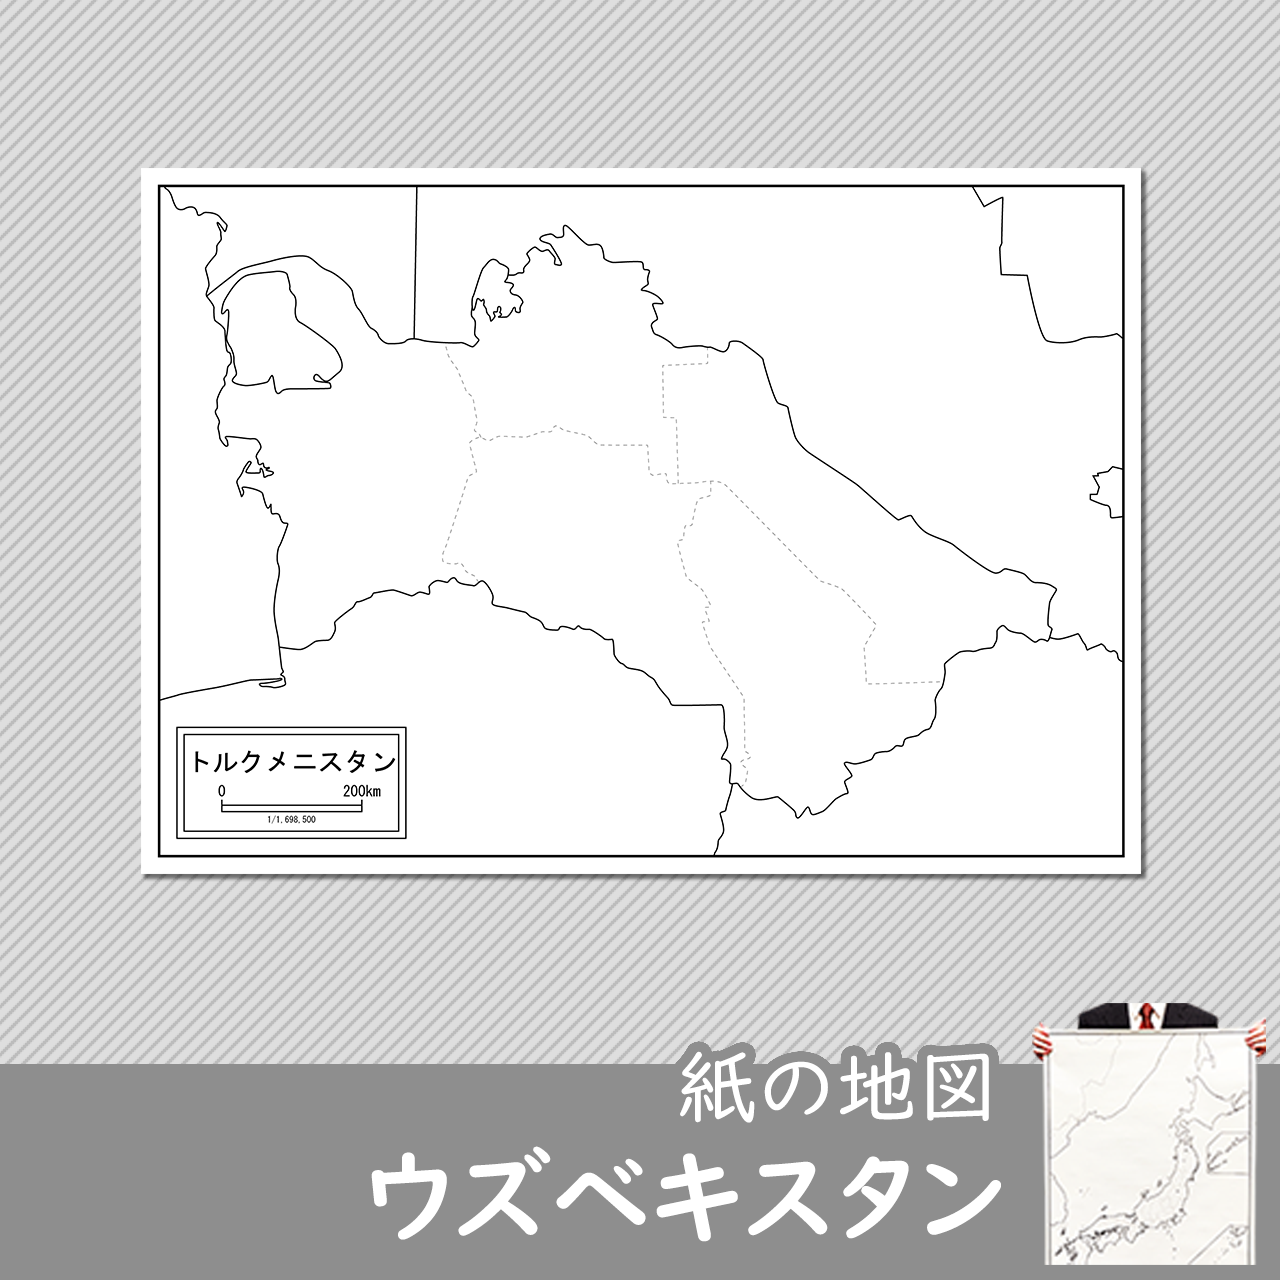 ウズベキスタンの紙の白地図のサムネイル